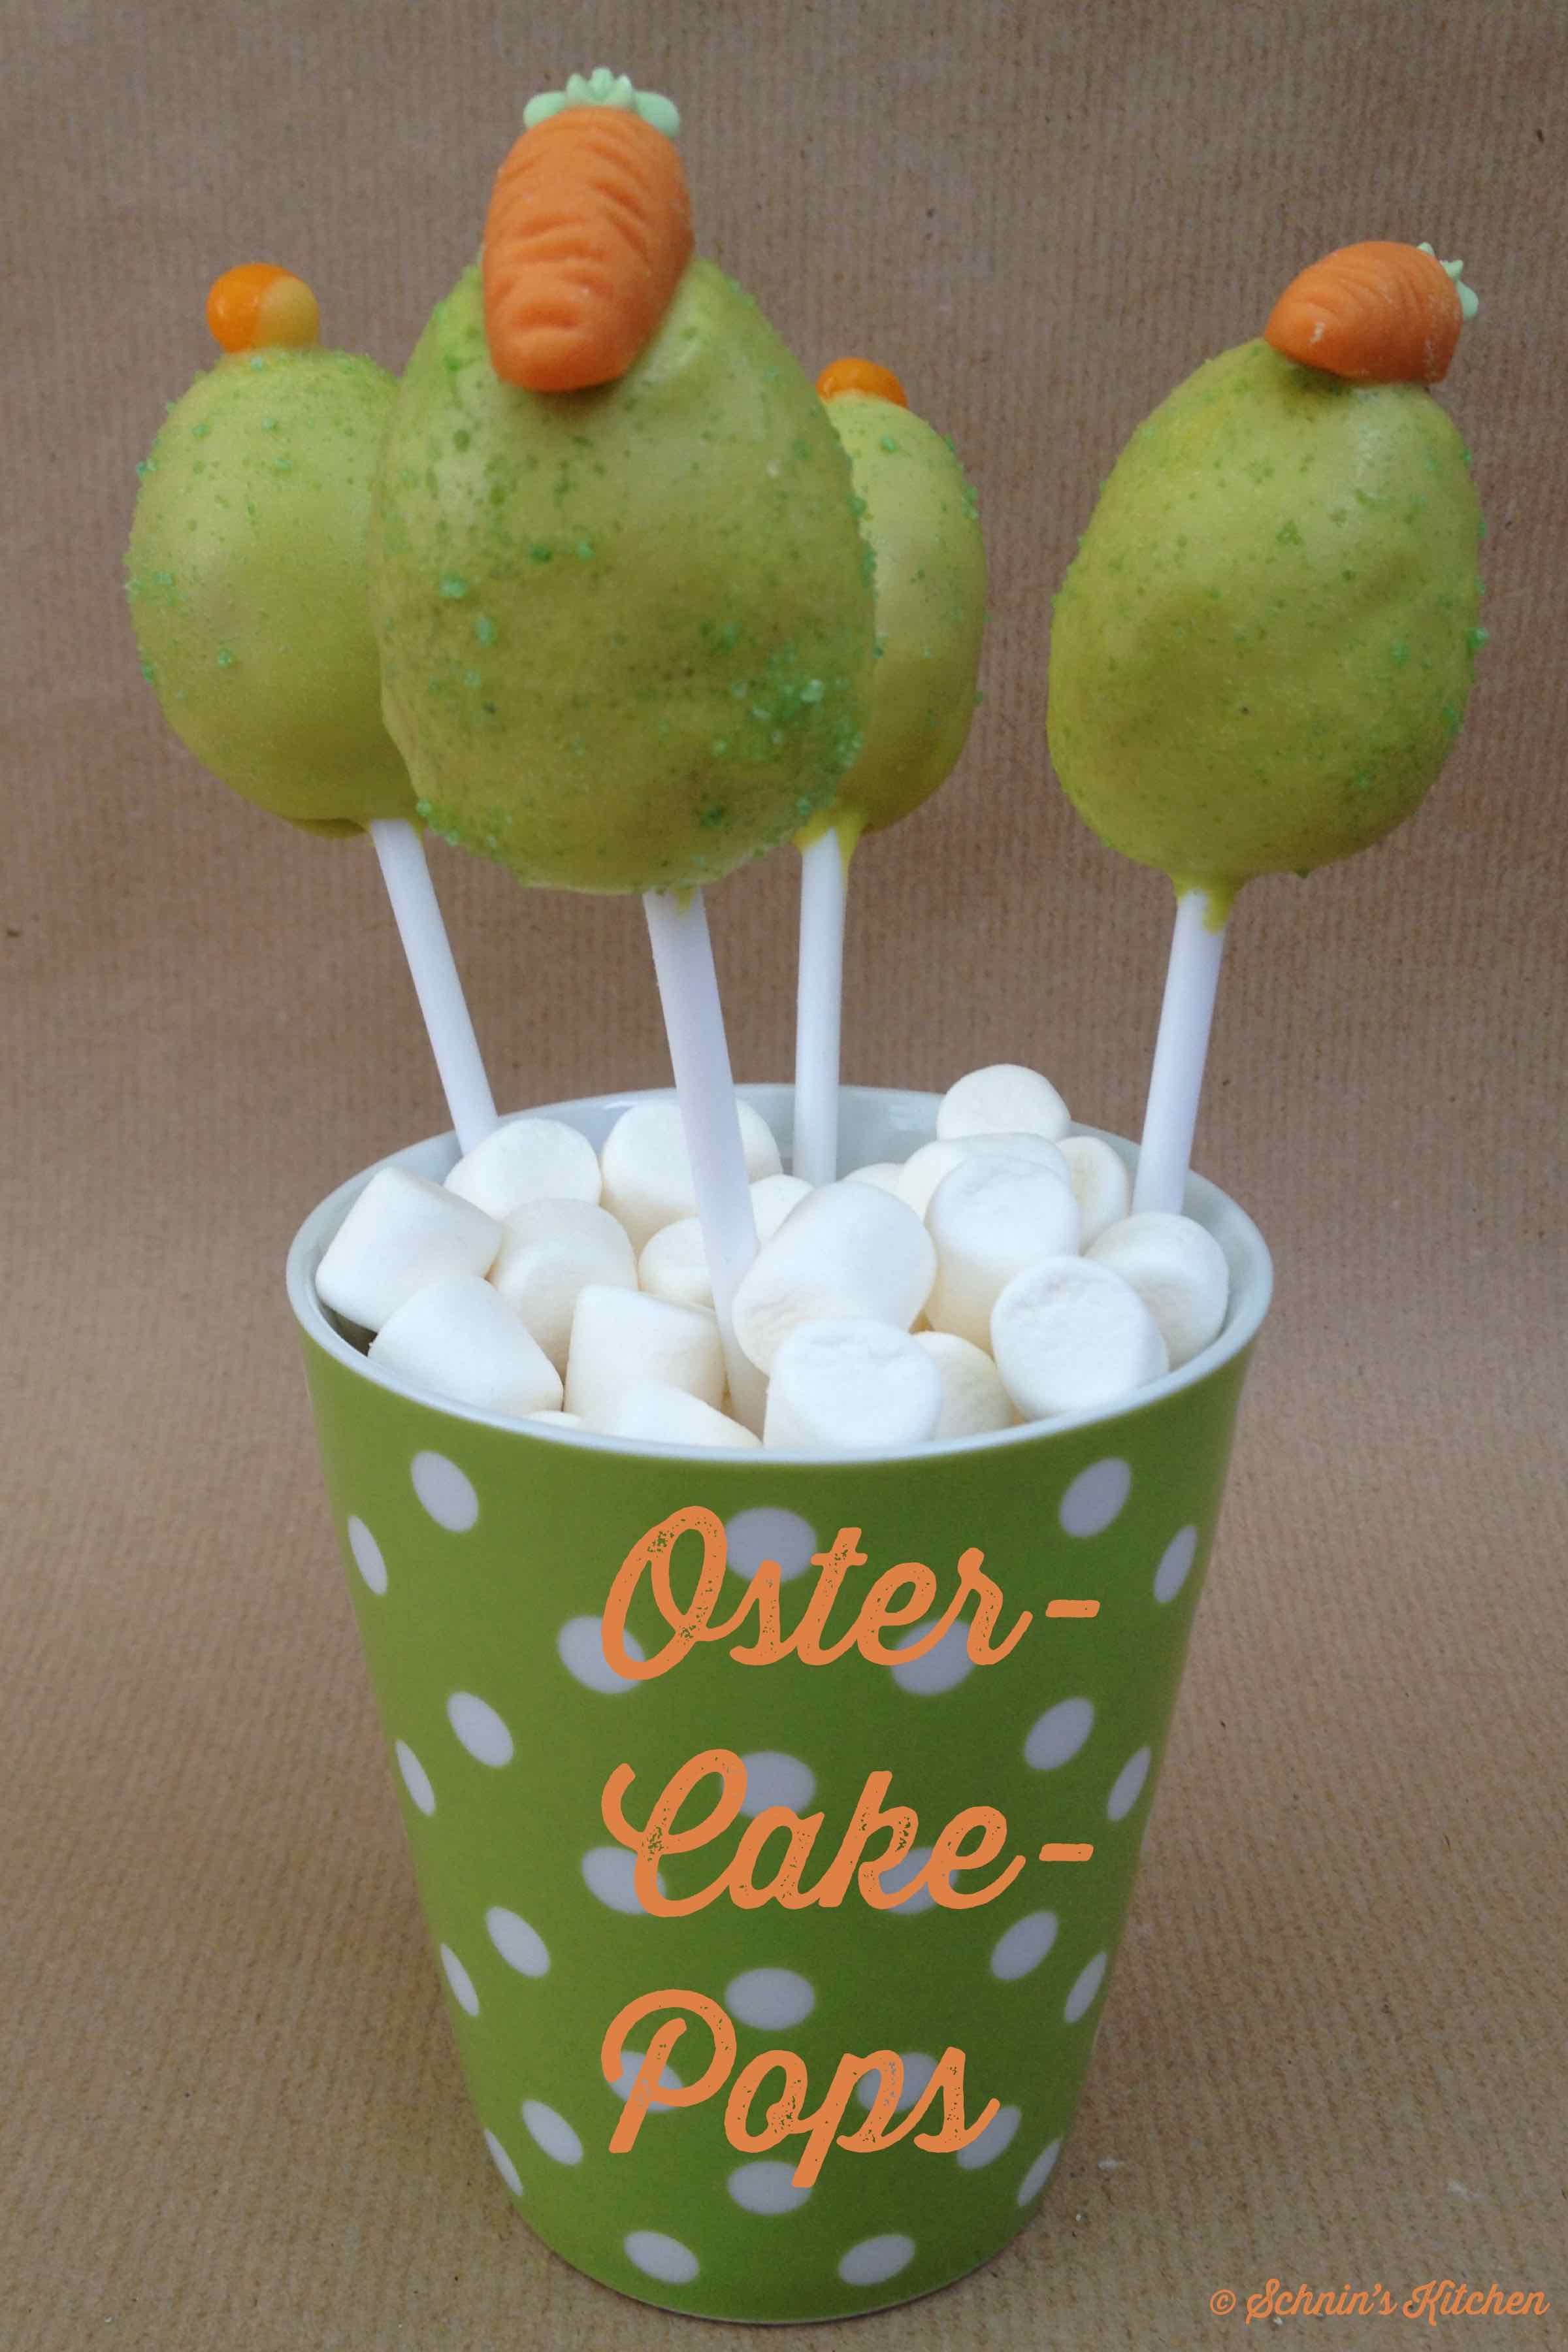 Schnin's Kitchen: Oster-Cake-Pops mit Marmelade